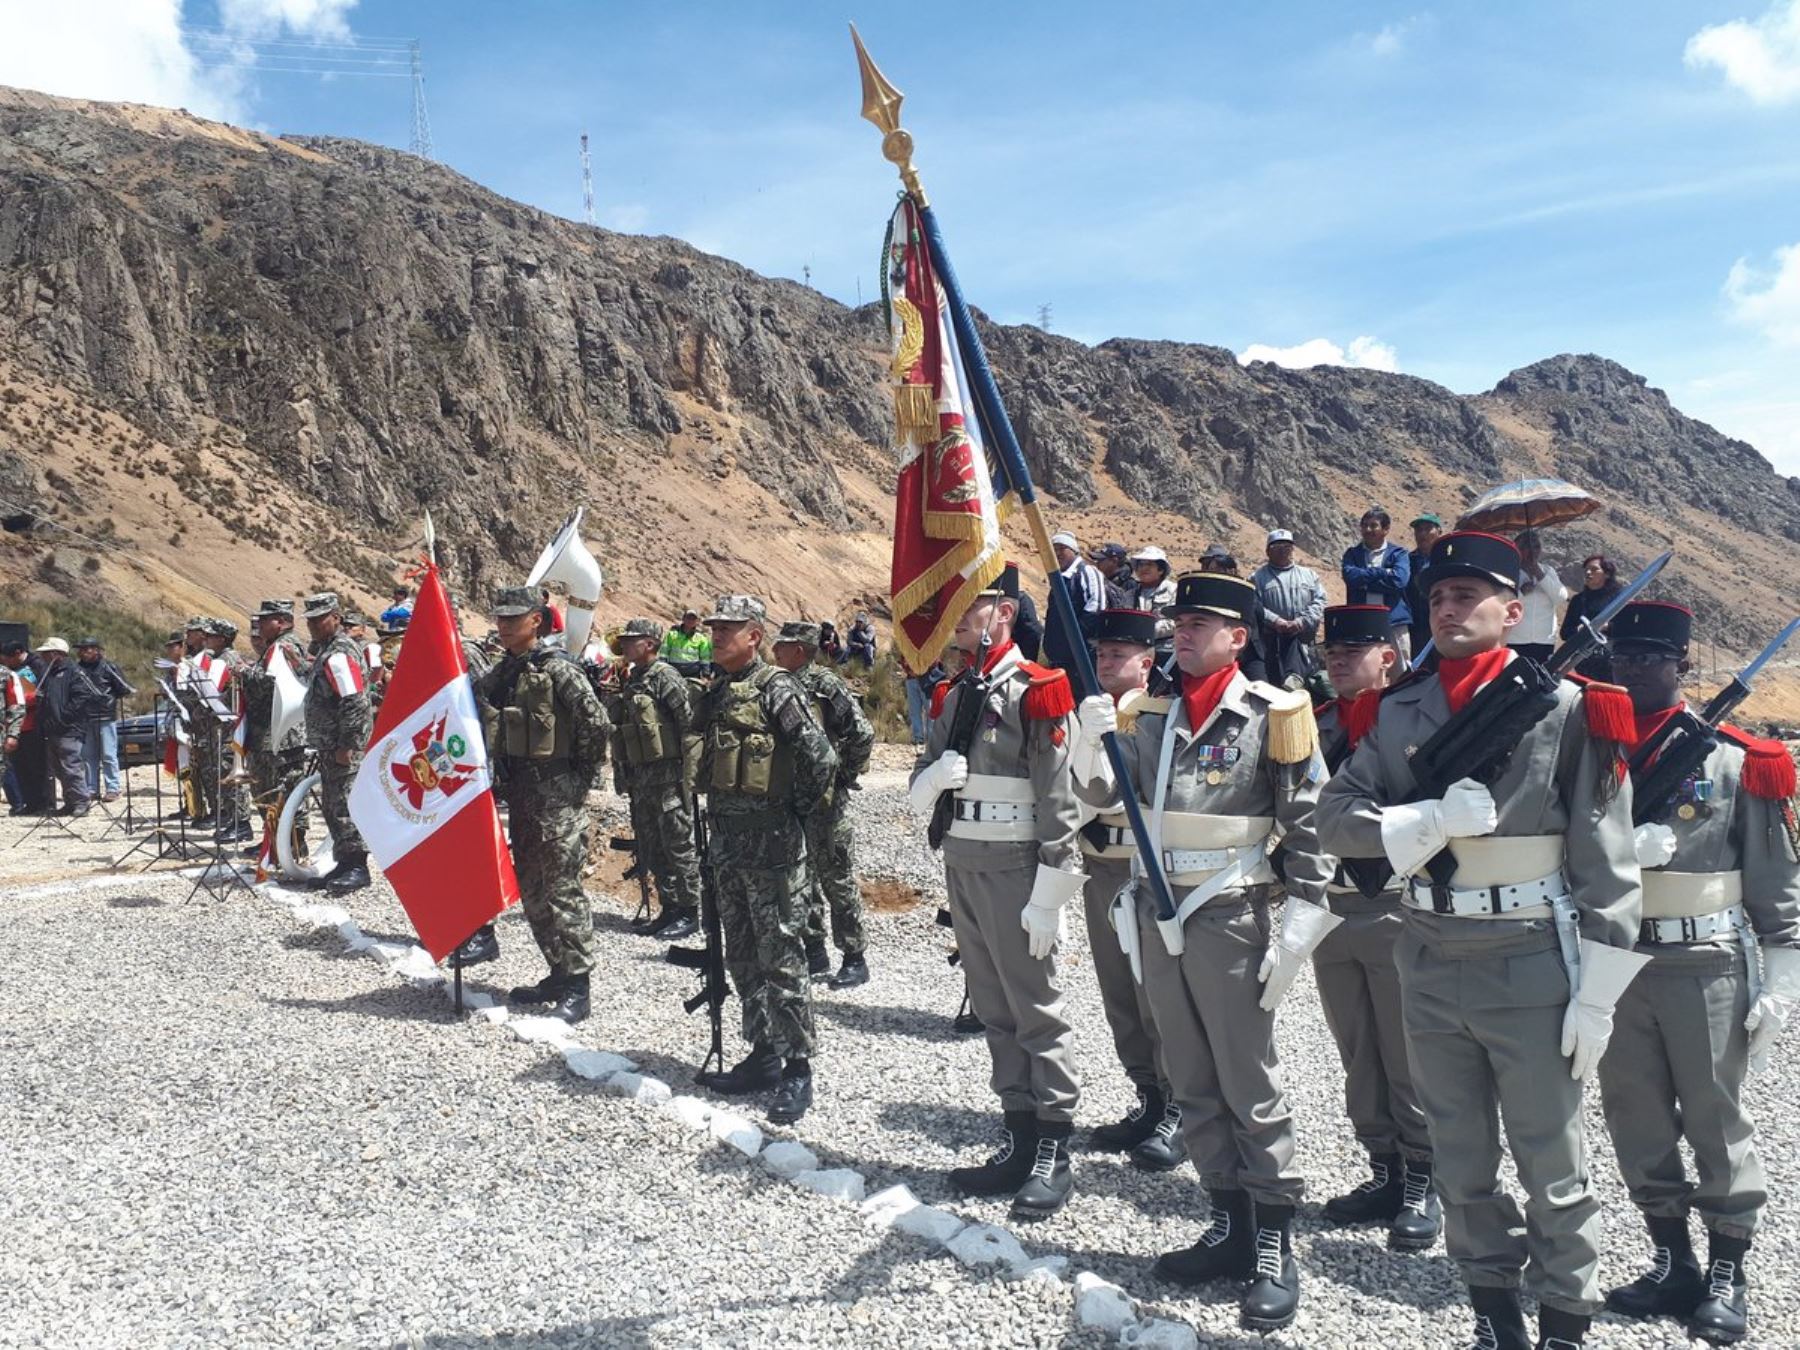 Regimiento de Artillería de Francia participó de homenaje a teniente francés François Aubry que murió en la Primera Guerra Mundial. Ceremonia se celebró en la mina de Huarón, en Pasco.